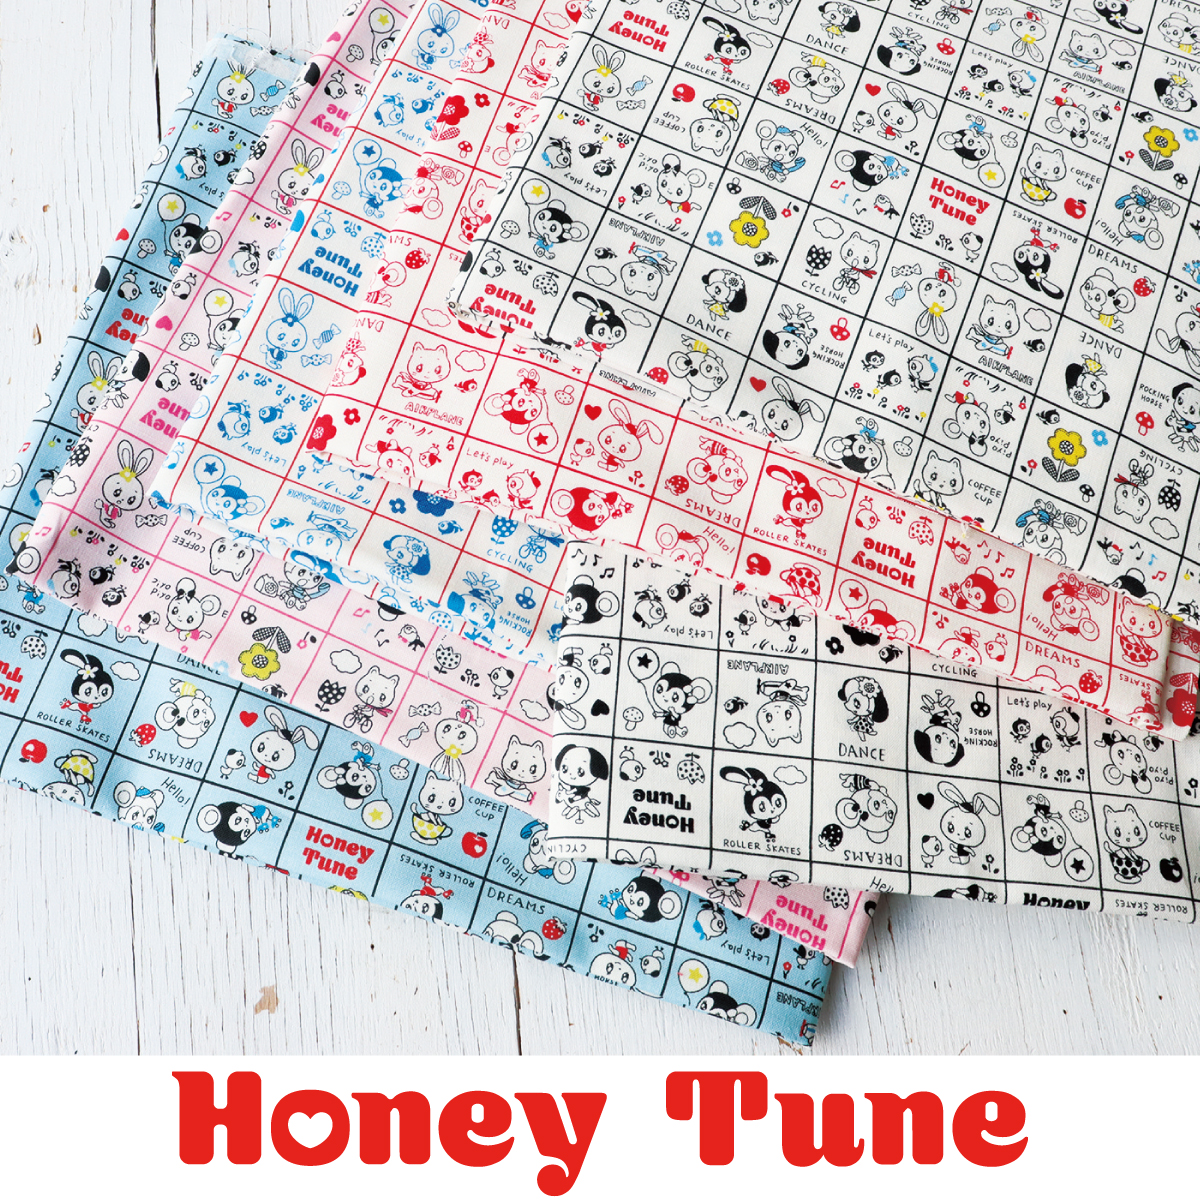 ■HT30000R-4 Honey Tune 2021 ハニーチューン「チューンズパターン」 原反約12m (巻)